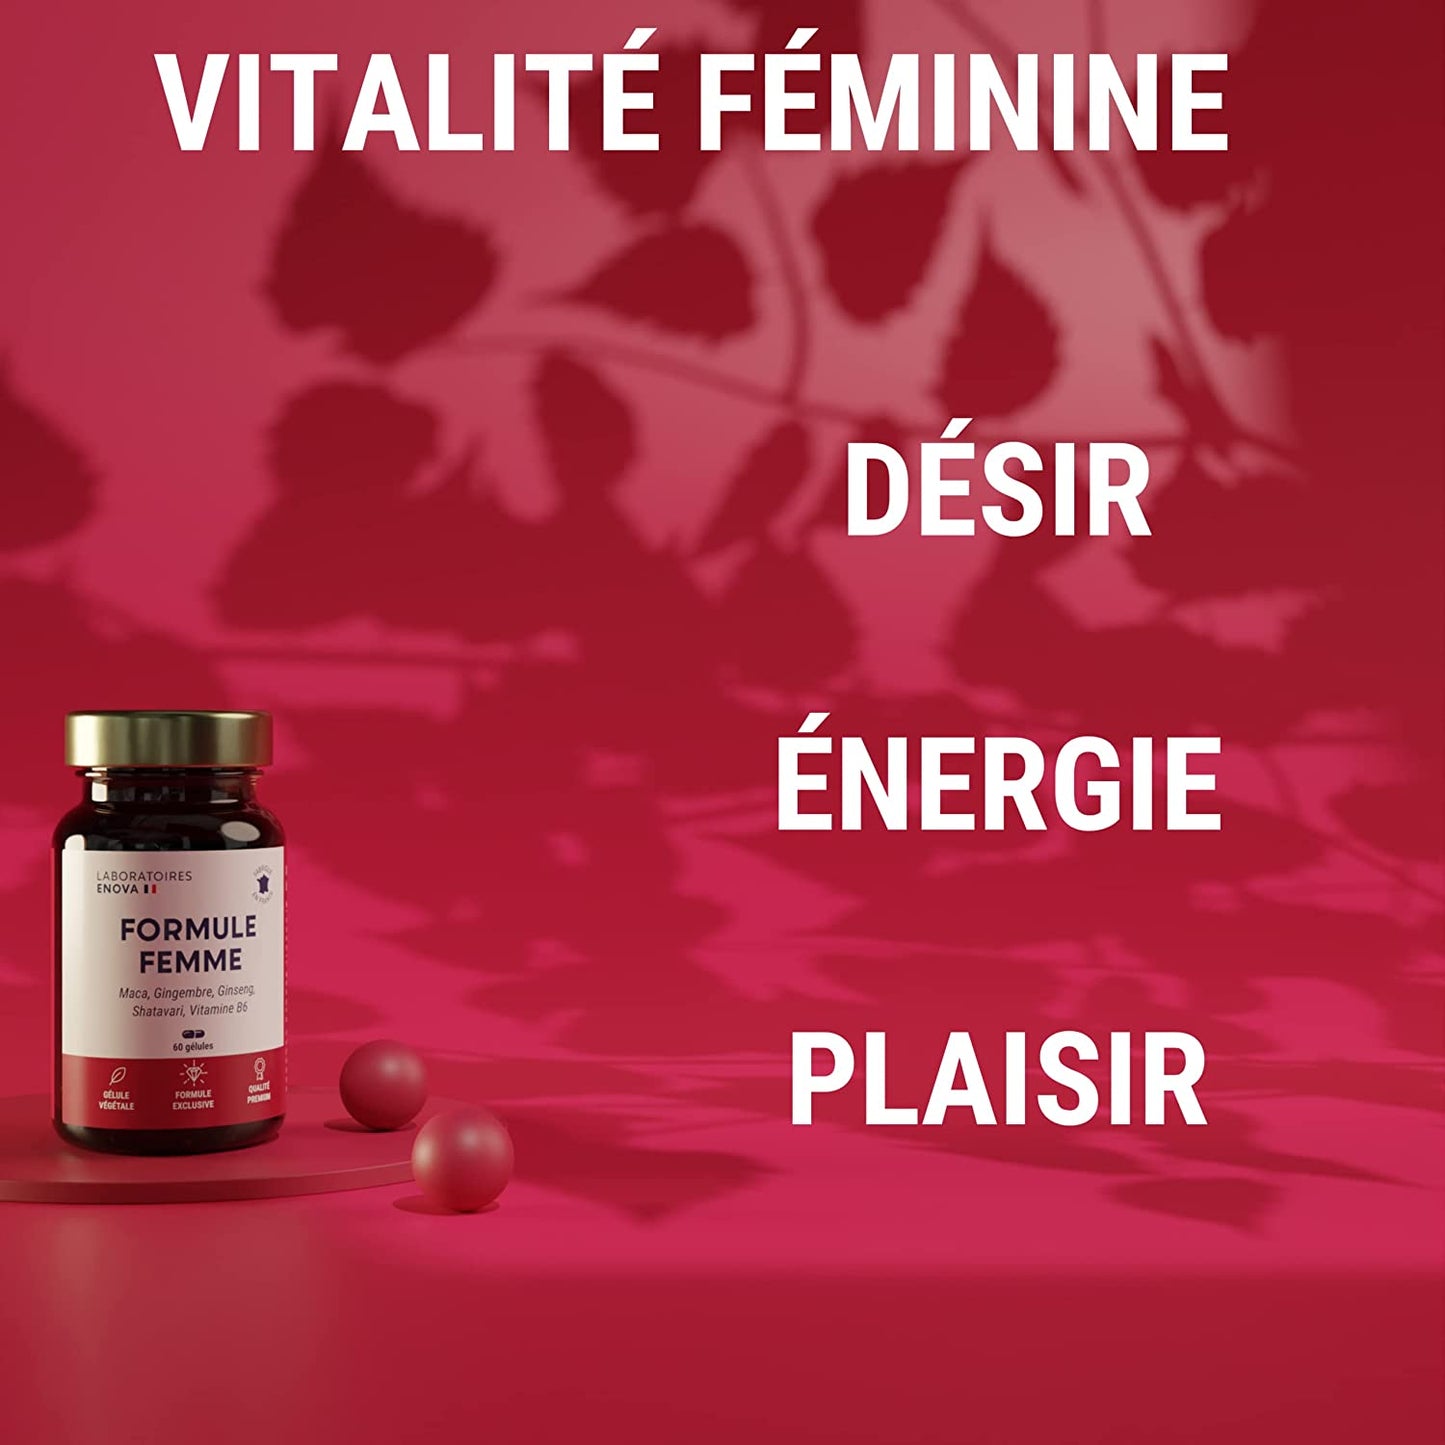 FORMULE FEMME - Vitalité Féminine - Désir Energie Plaisir